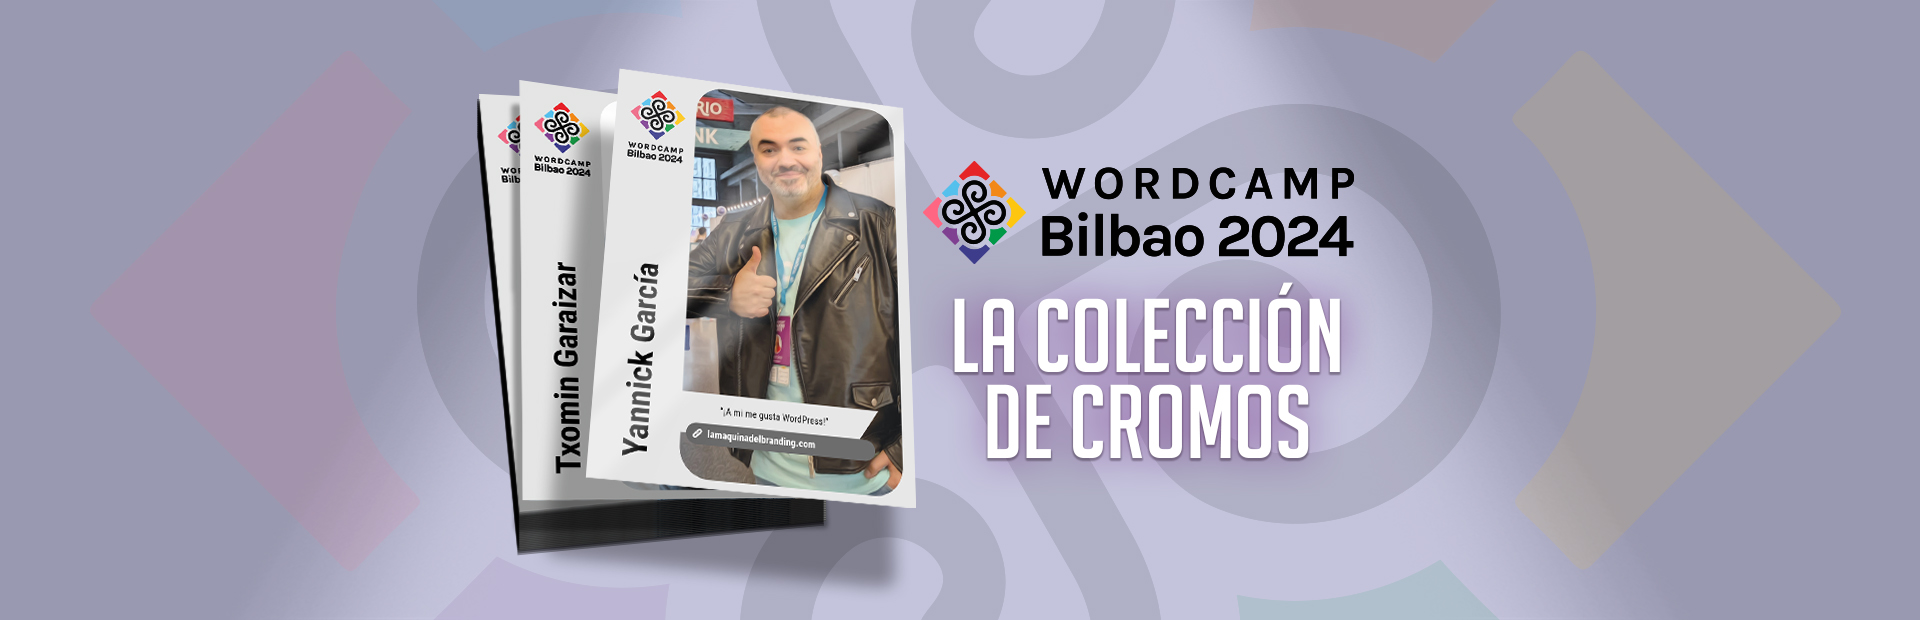 ¡Colección de Cromos de WordCamp Bilbao 2024!